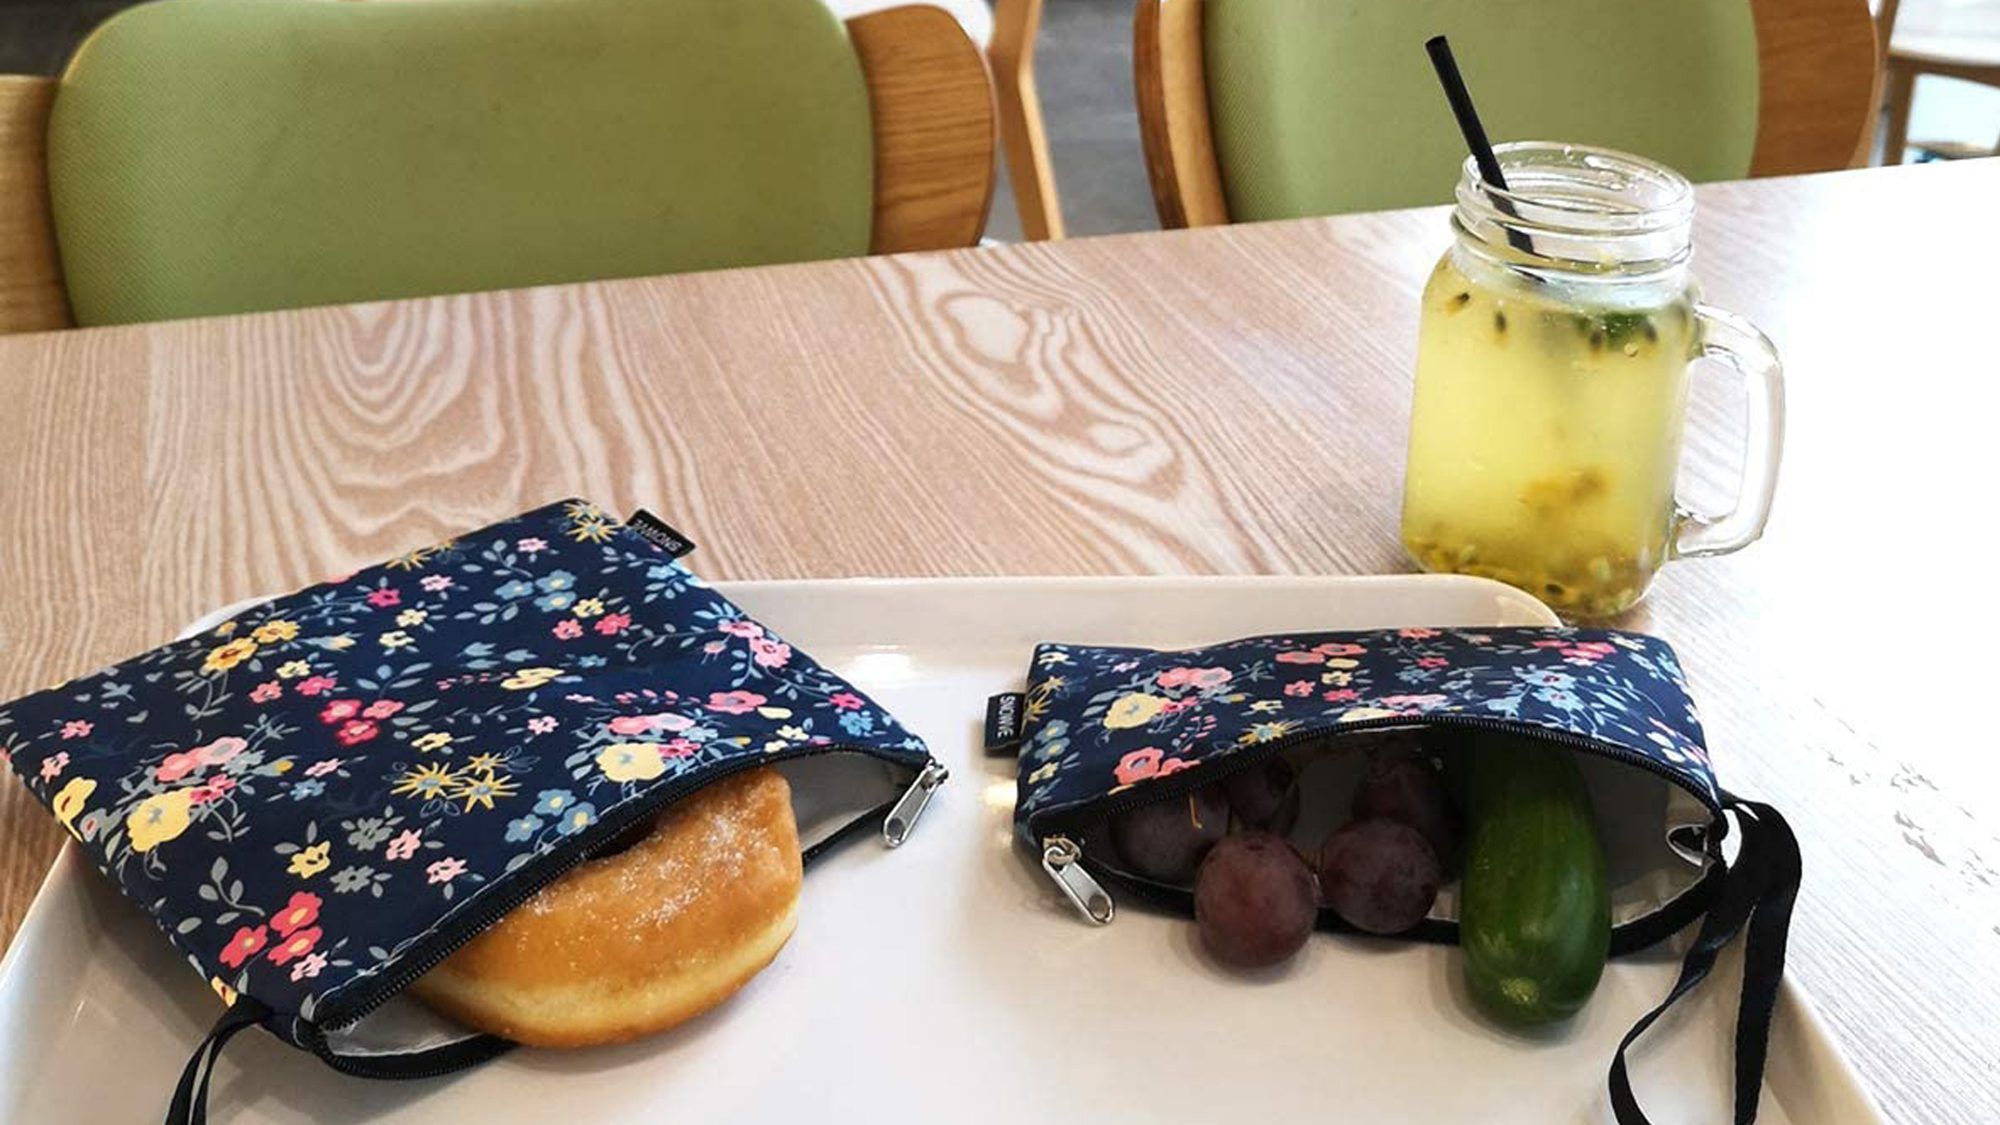 Újrafelhasználható snack zacskók szendvicszacskók – kétrétegű, környezetbarát, mosogatógépben mosható ebédzsákok